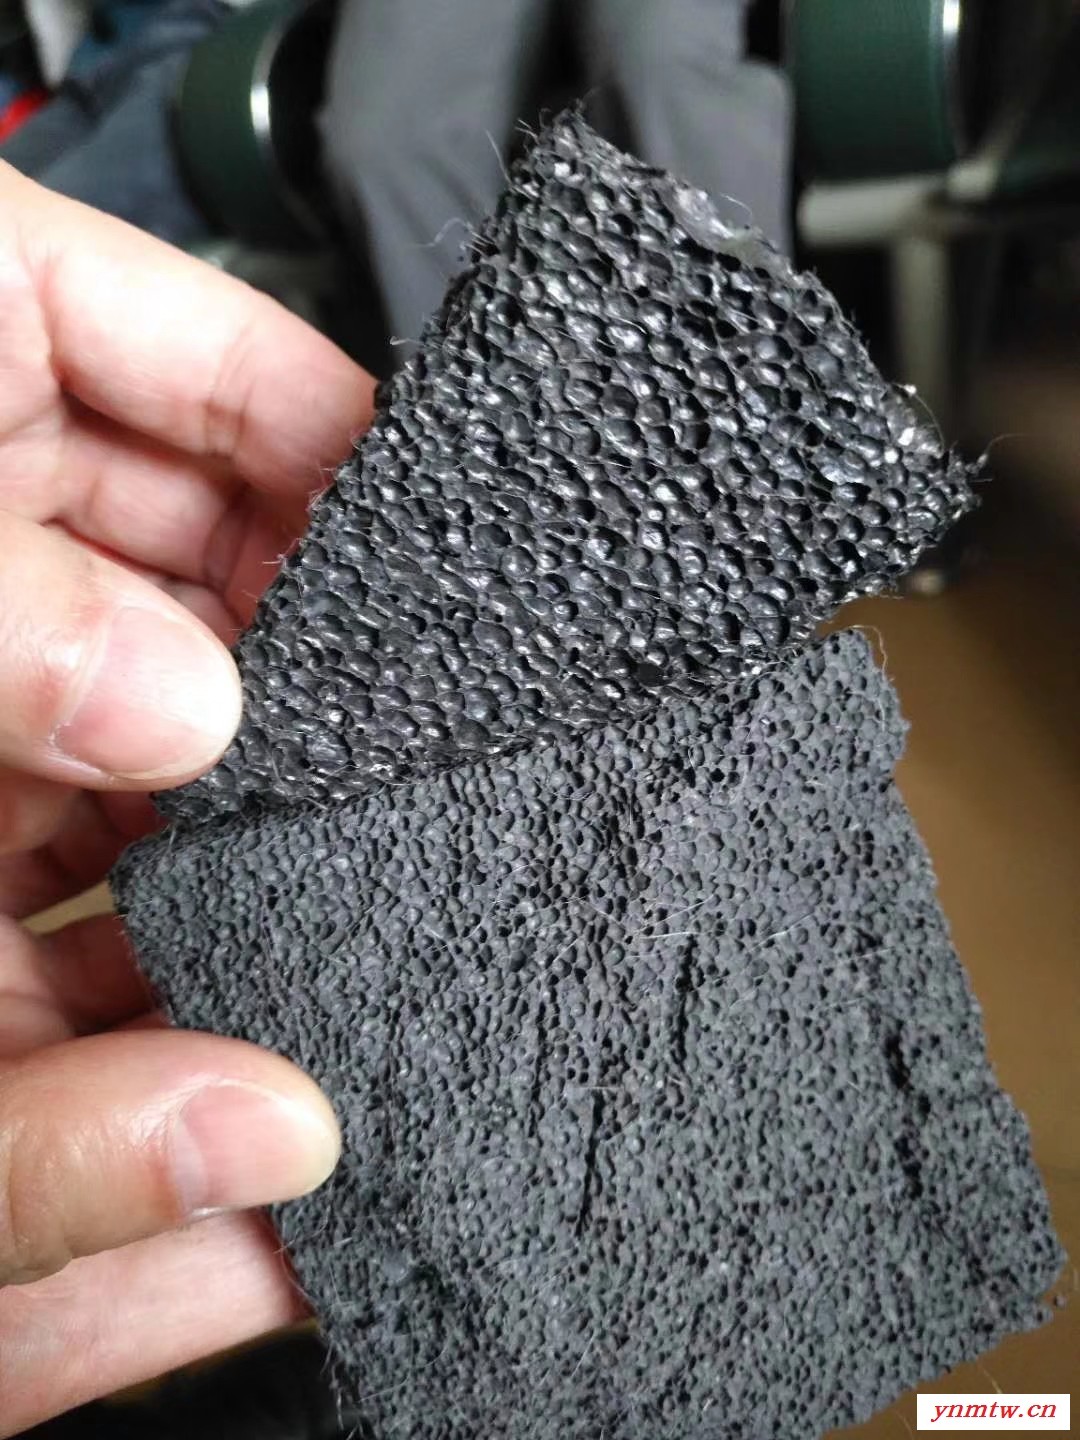 防腐涂料炭黑粉末 蓝色相碳黑价格 环保色素碳黑价格 高色素炭黑高光泽价格